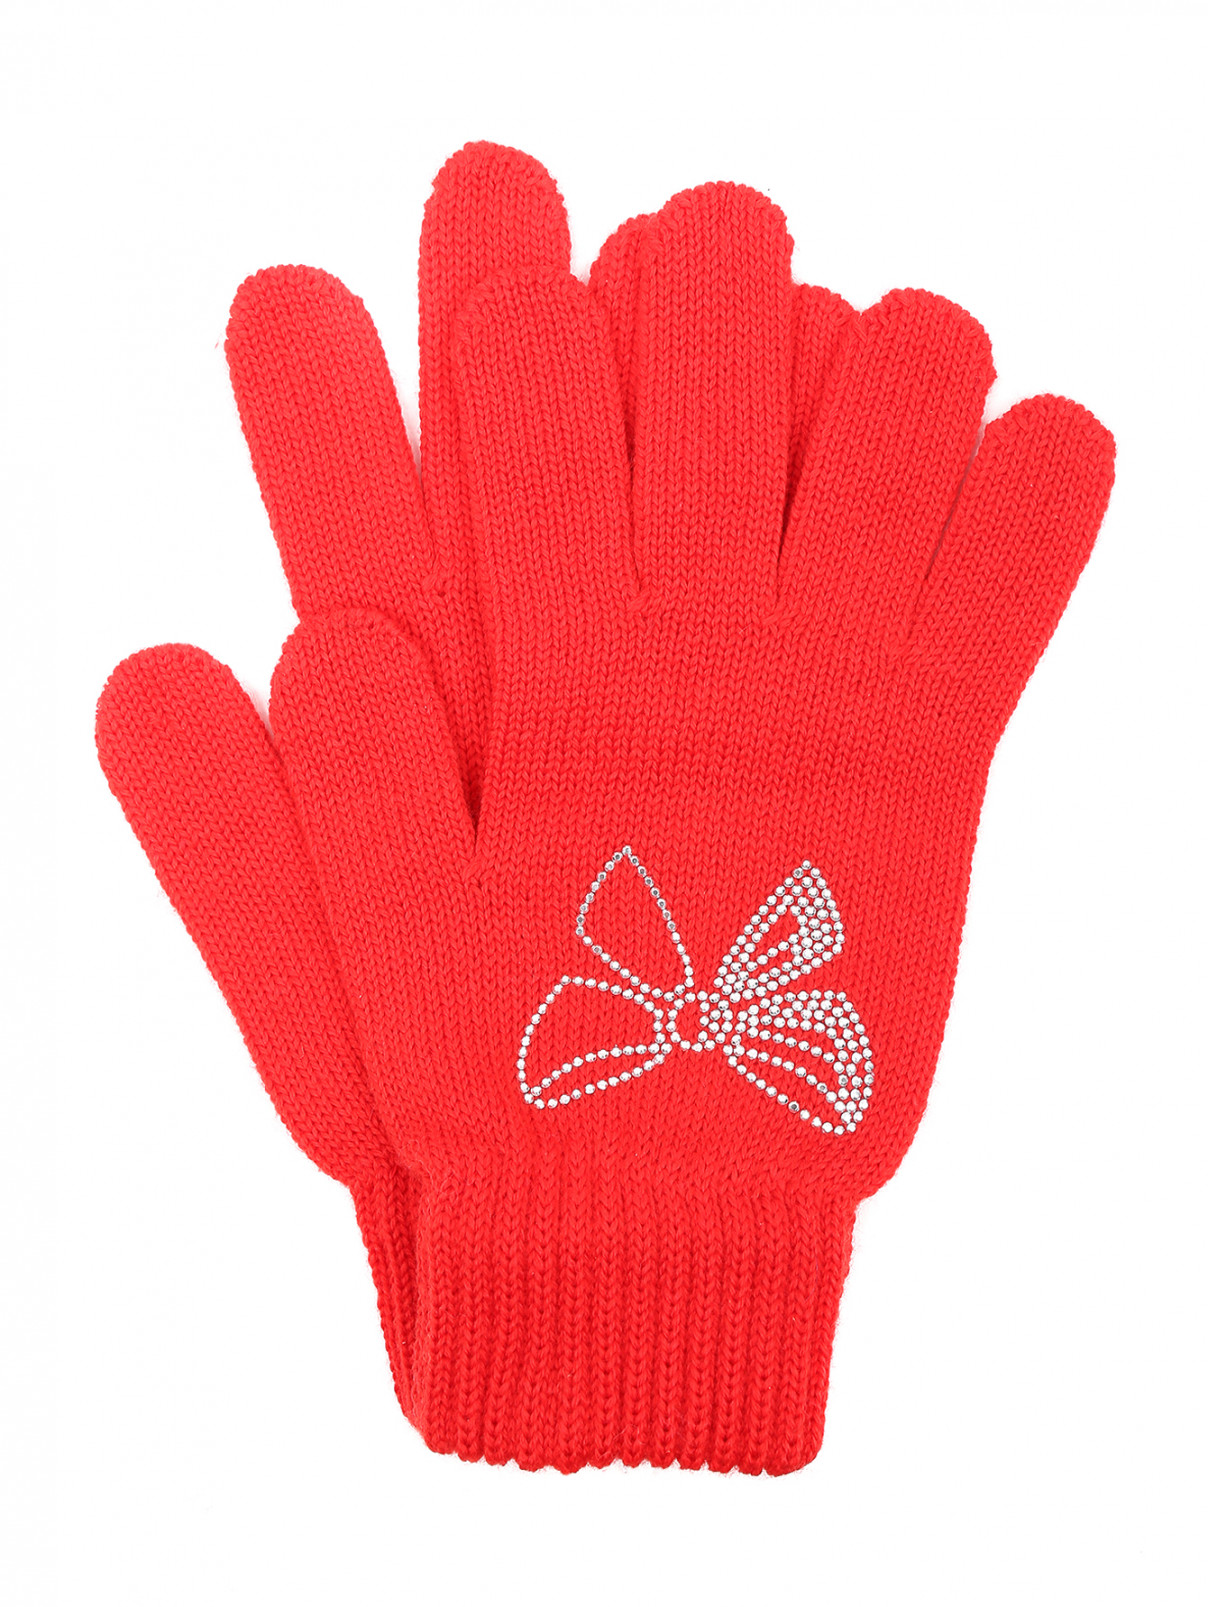 Перчатки трикотажные из шерсти со стразами Catya  –  Общий вид  – Цвет:  Красный